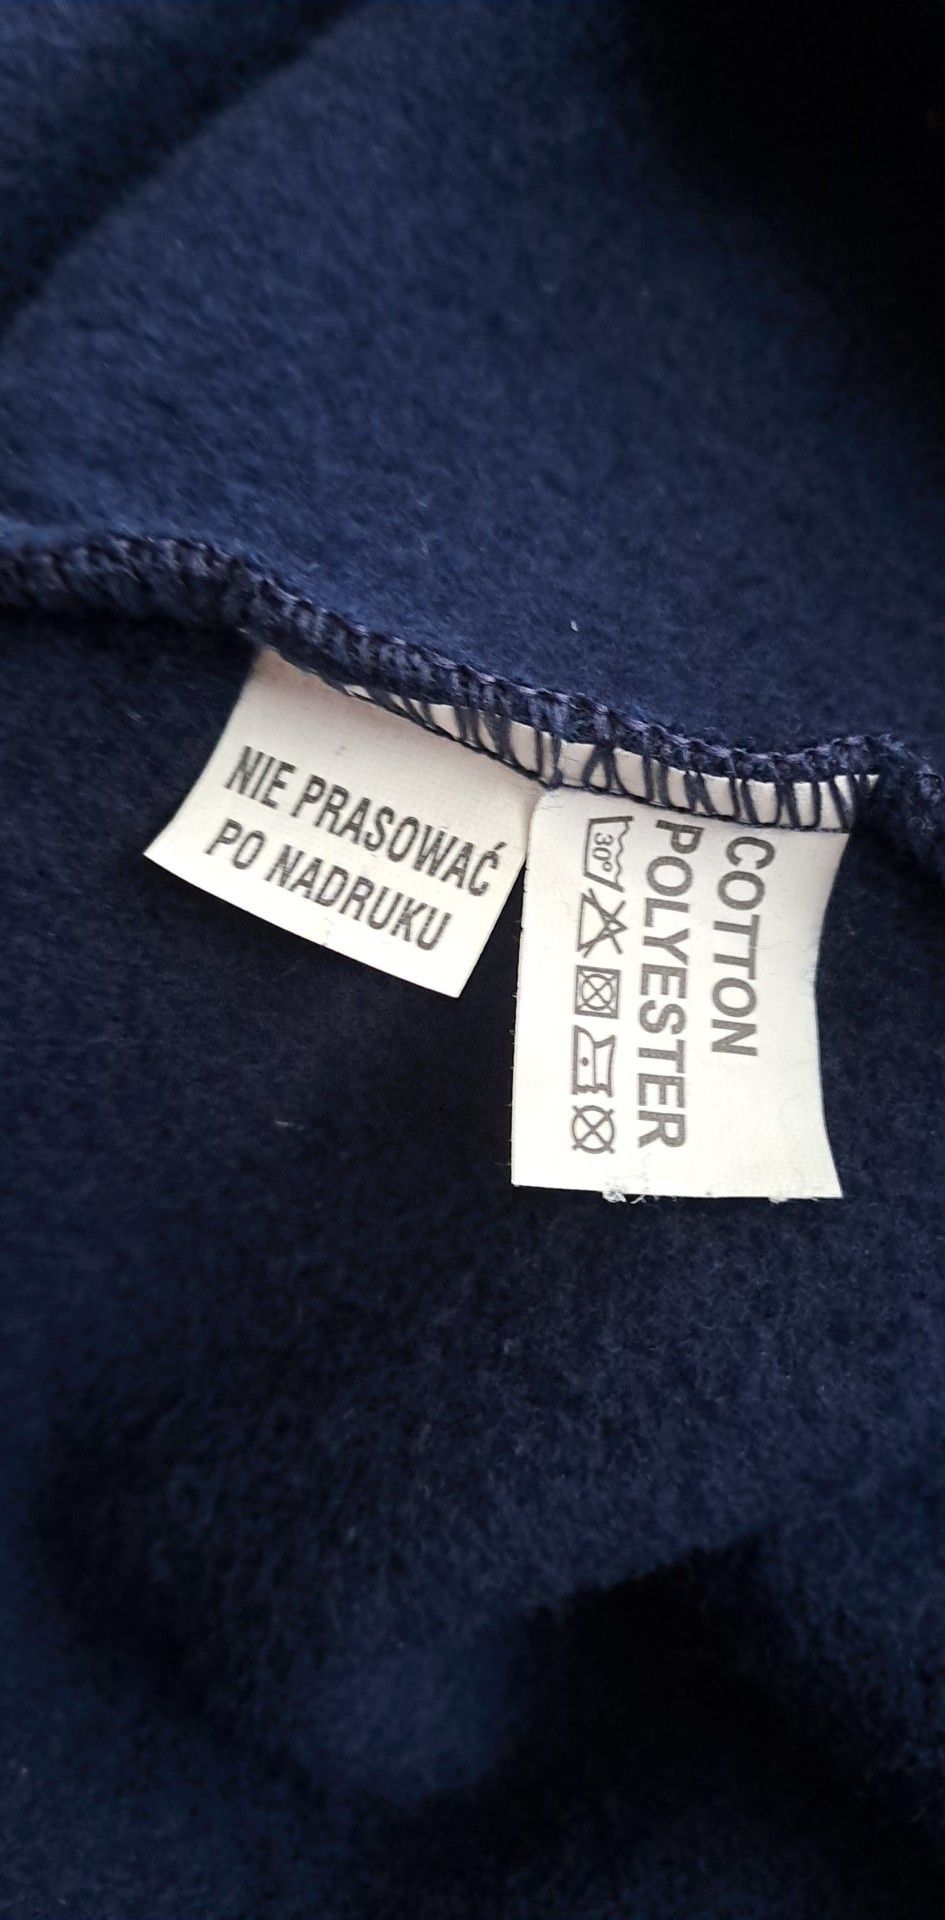 Nowa duża plus size bluza męska  bawełna cotton 4/5 xl